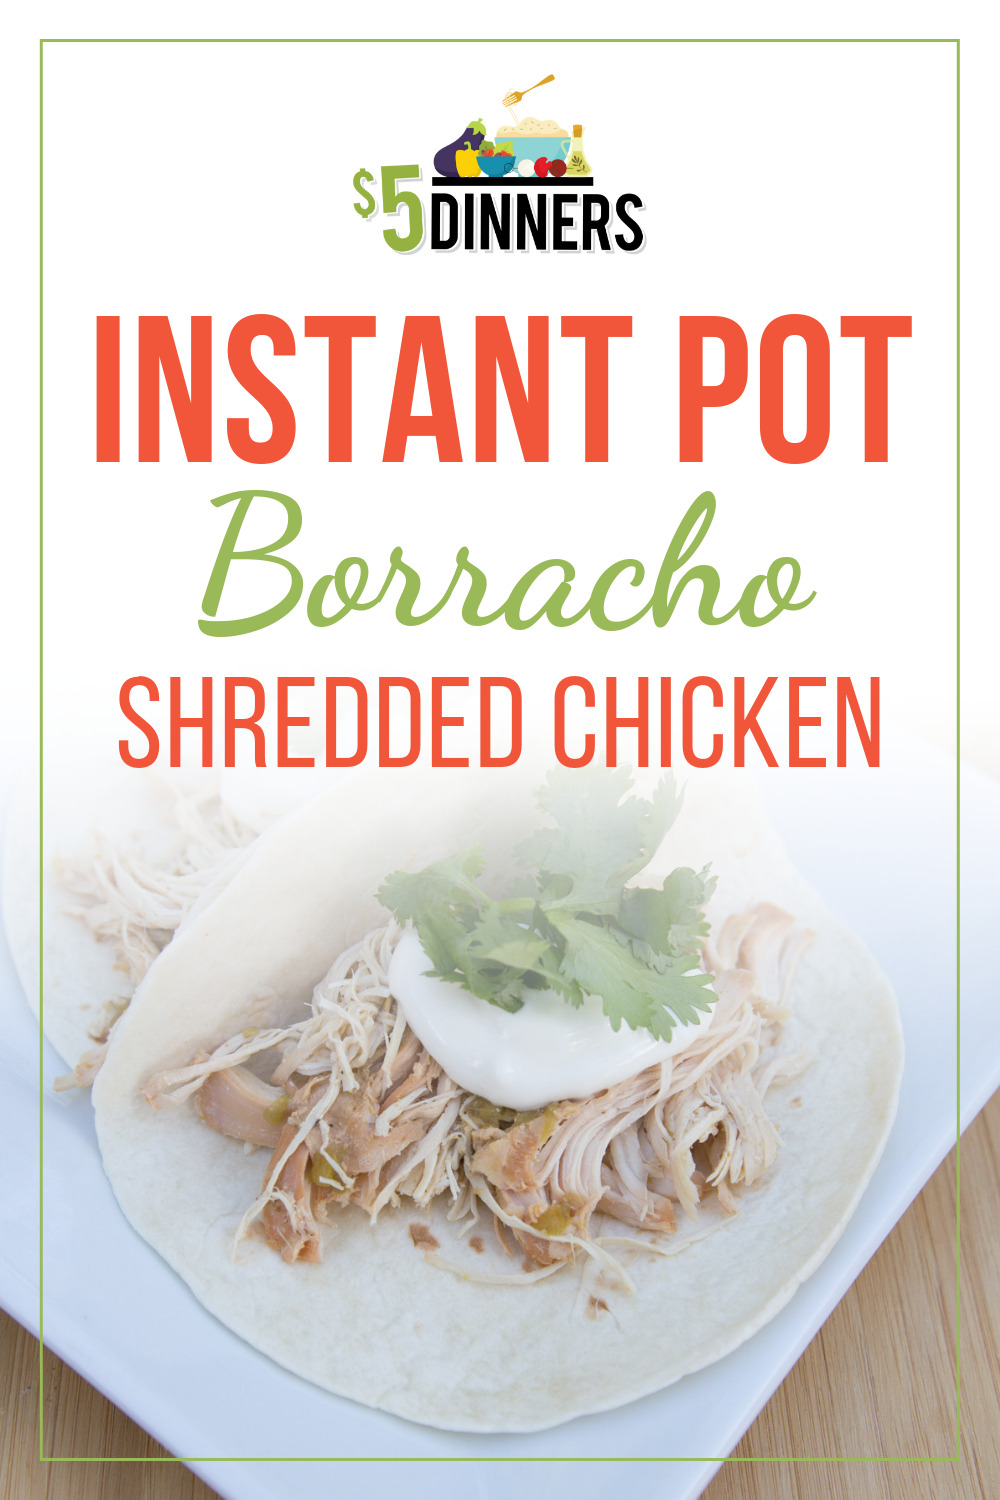 instant pot borracho shredded chicken